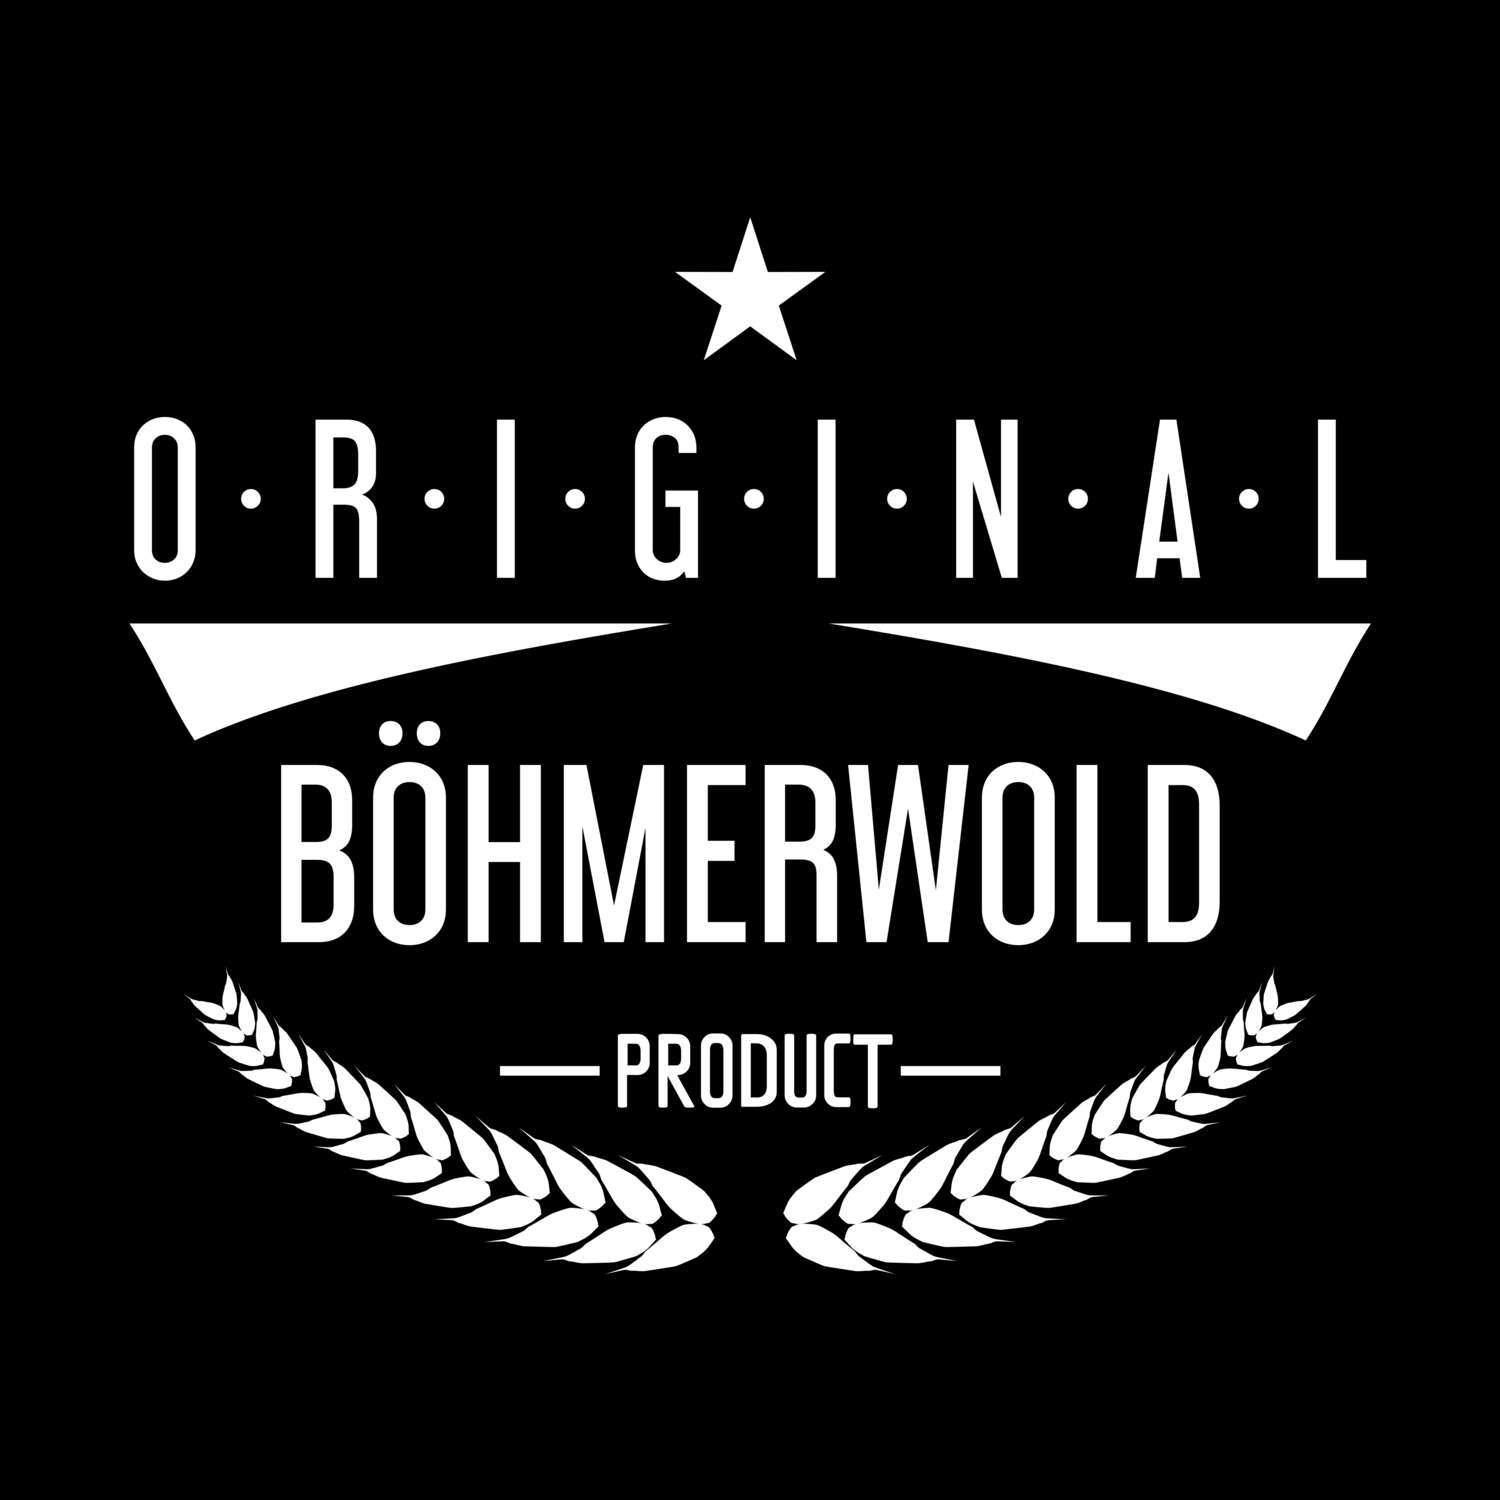 Böhmerwold T-Shirt »Original Product«